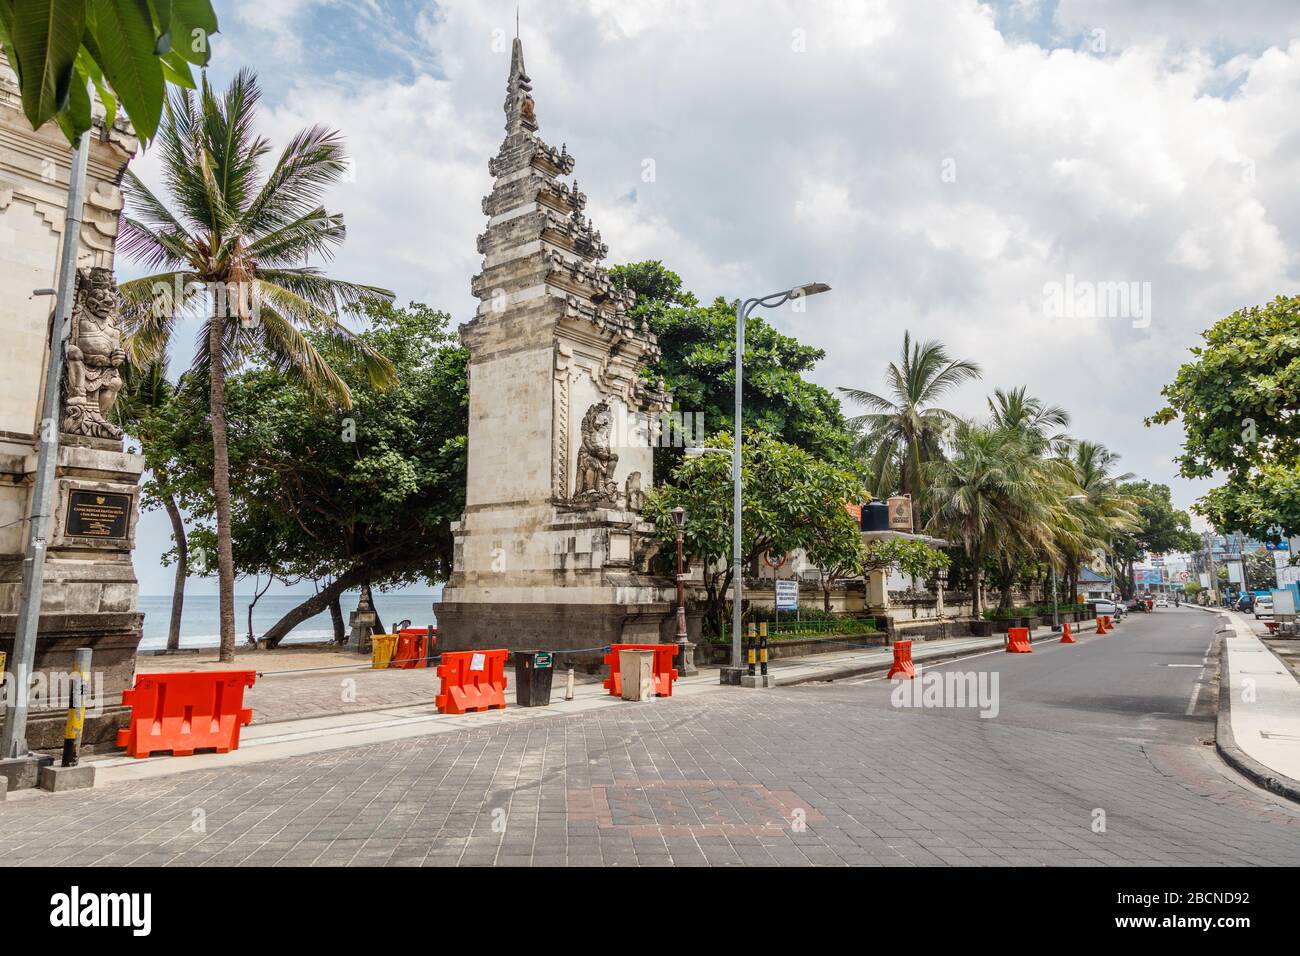 05 avril 2020. La destination touristique populaire vide Kuta plage fermée en raison de la quarantaine du virus corona. Badung, Bali, Indonésie. Banque D'Images